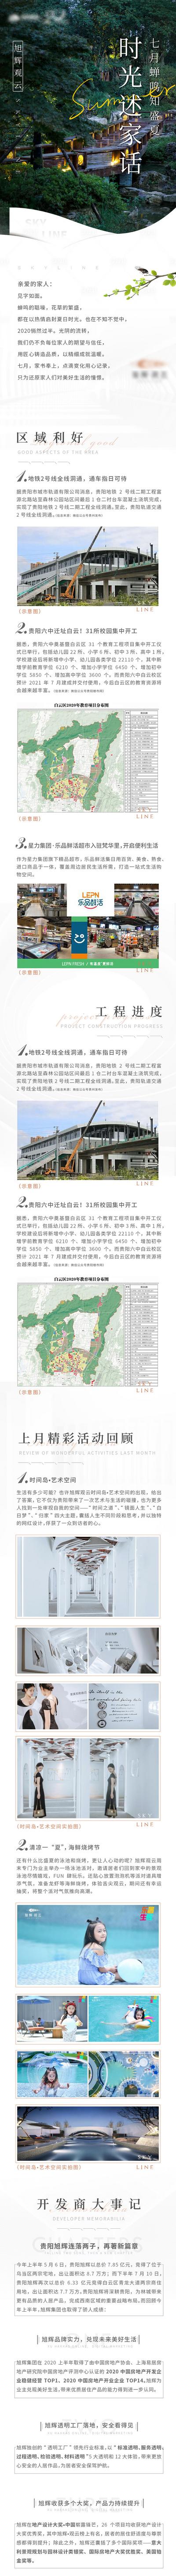 南门网 专题设计 长图 房地产 家书 工程进度 区域 价值点 回顾 大事记 盛夏 园林 